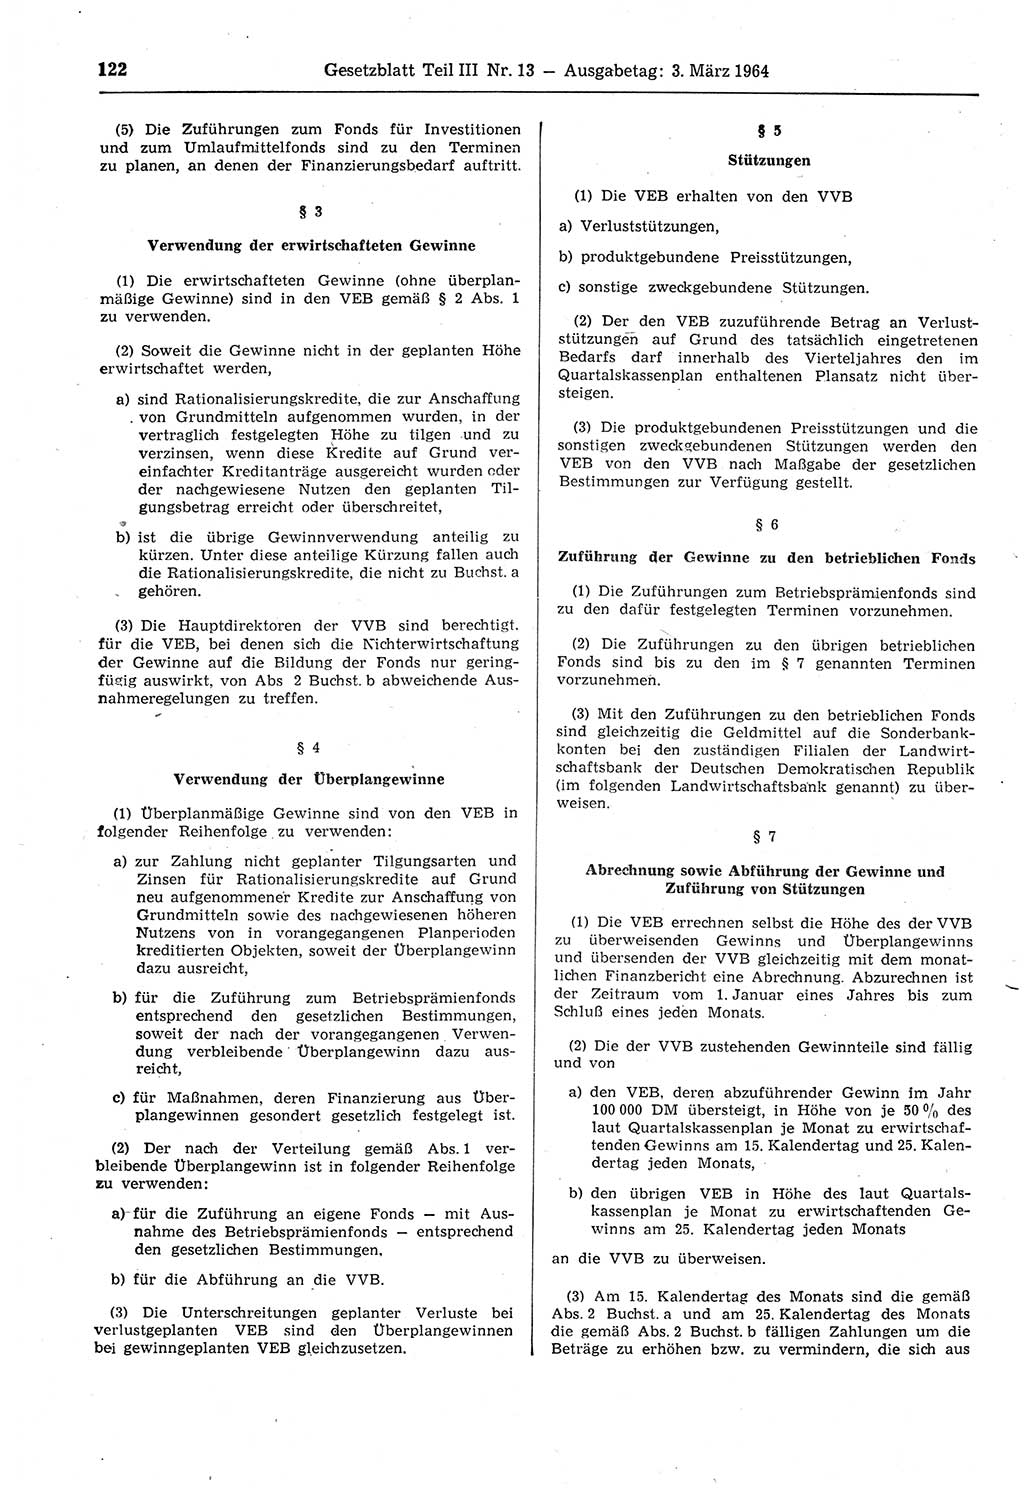 Gesetzblatt (GBl.) der Deutschen Demokratischen Republik (DDR) Teil ⅠⅠⅠ 1964, Seite 122 (GBl. DDR ⅠⅠⅠ 1964, S. 122)